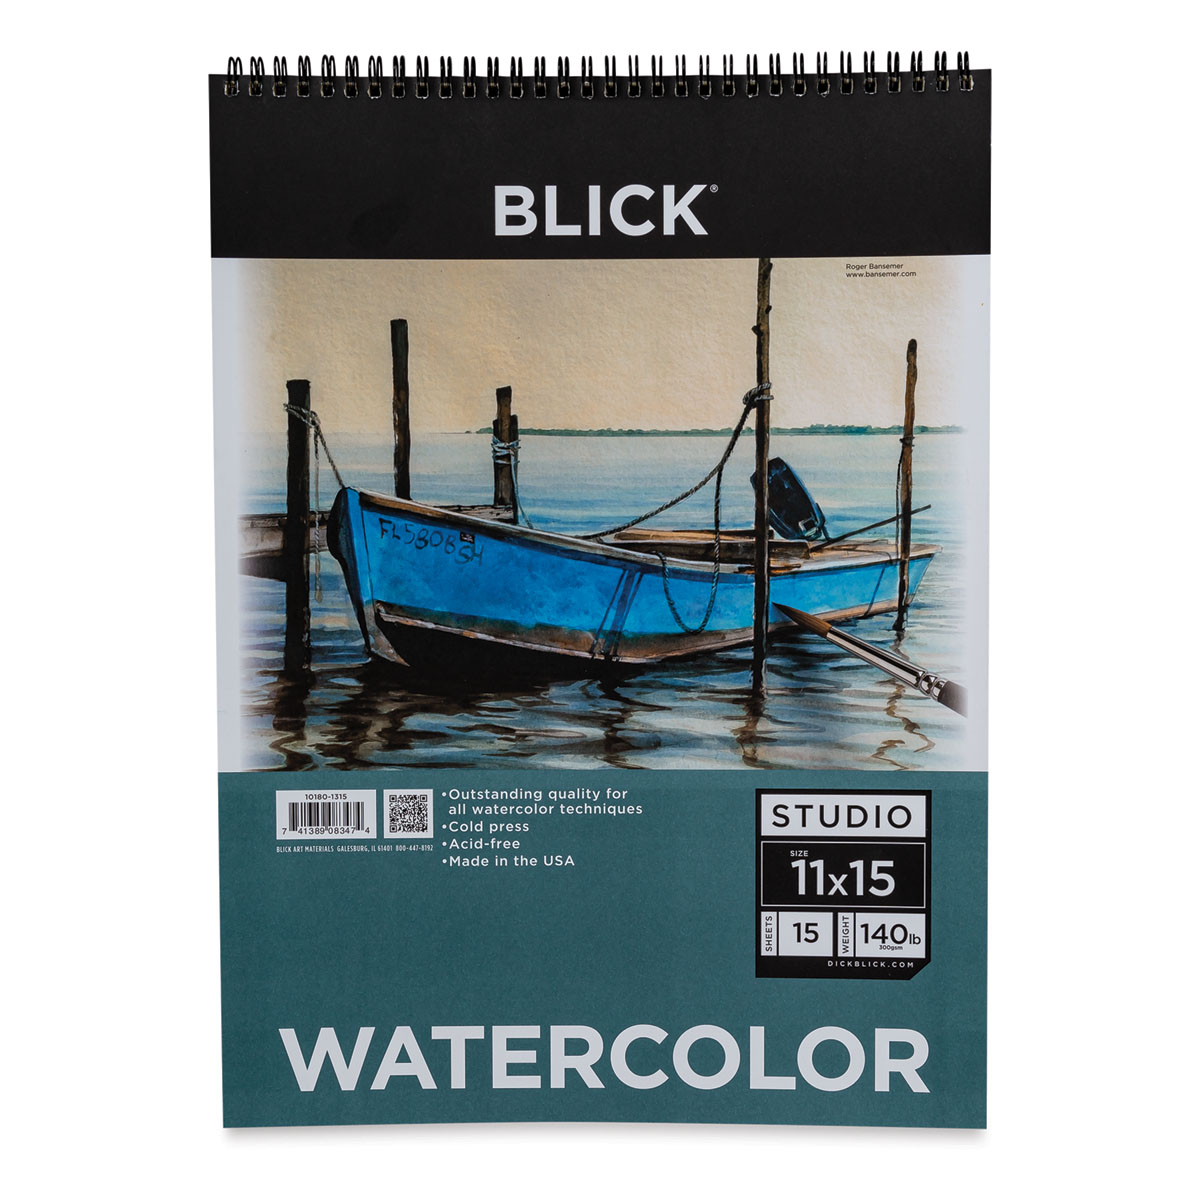 Blick Studio Disposable Palette Pads